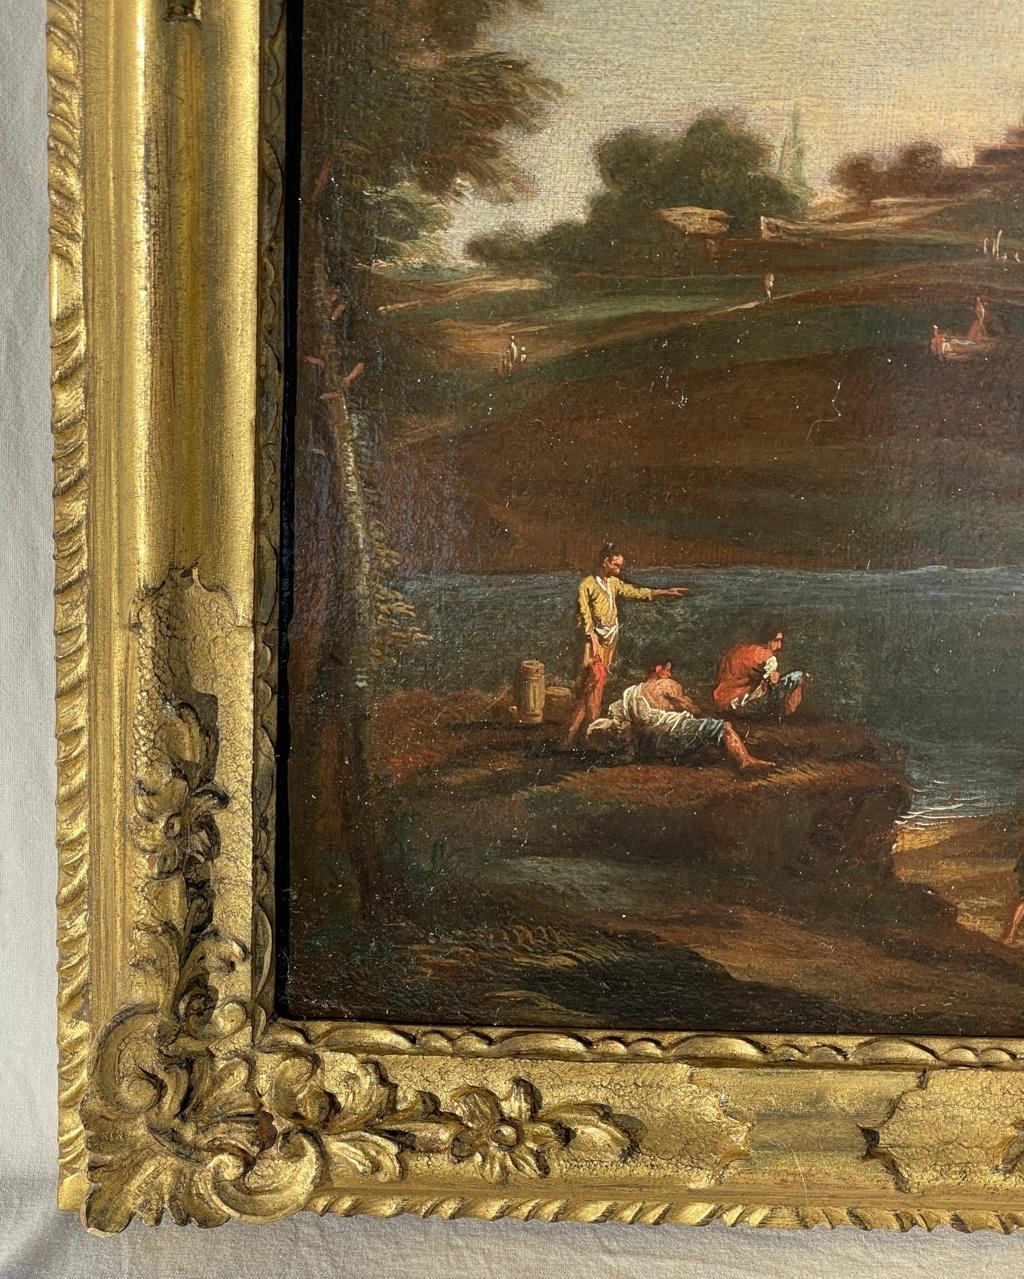 Cerchia di Marco Ricci (Belluno 1676 - Venezia 1730) - Paysage fluvial avec personnages.

34 x 26 cm sans cadre, 43 x 35 cm avec cadre.

Huile sur toile, dans un cadre en bois sculpté et doré.

-Le tableau peut être placé dans le cercle de Marco